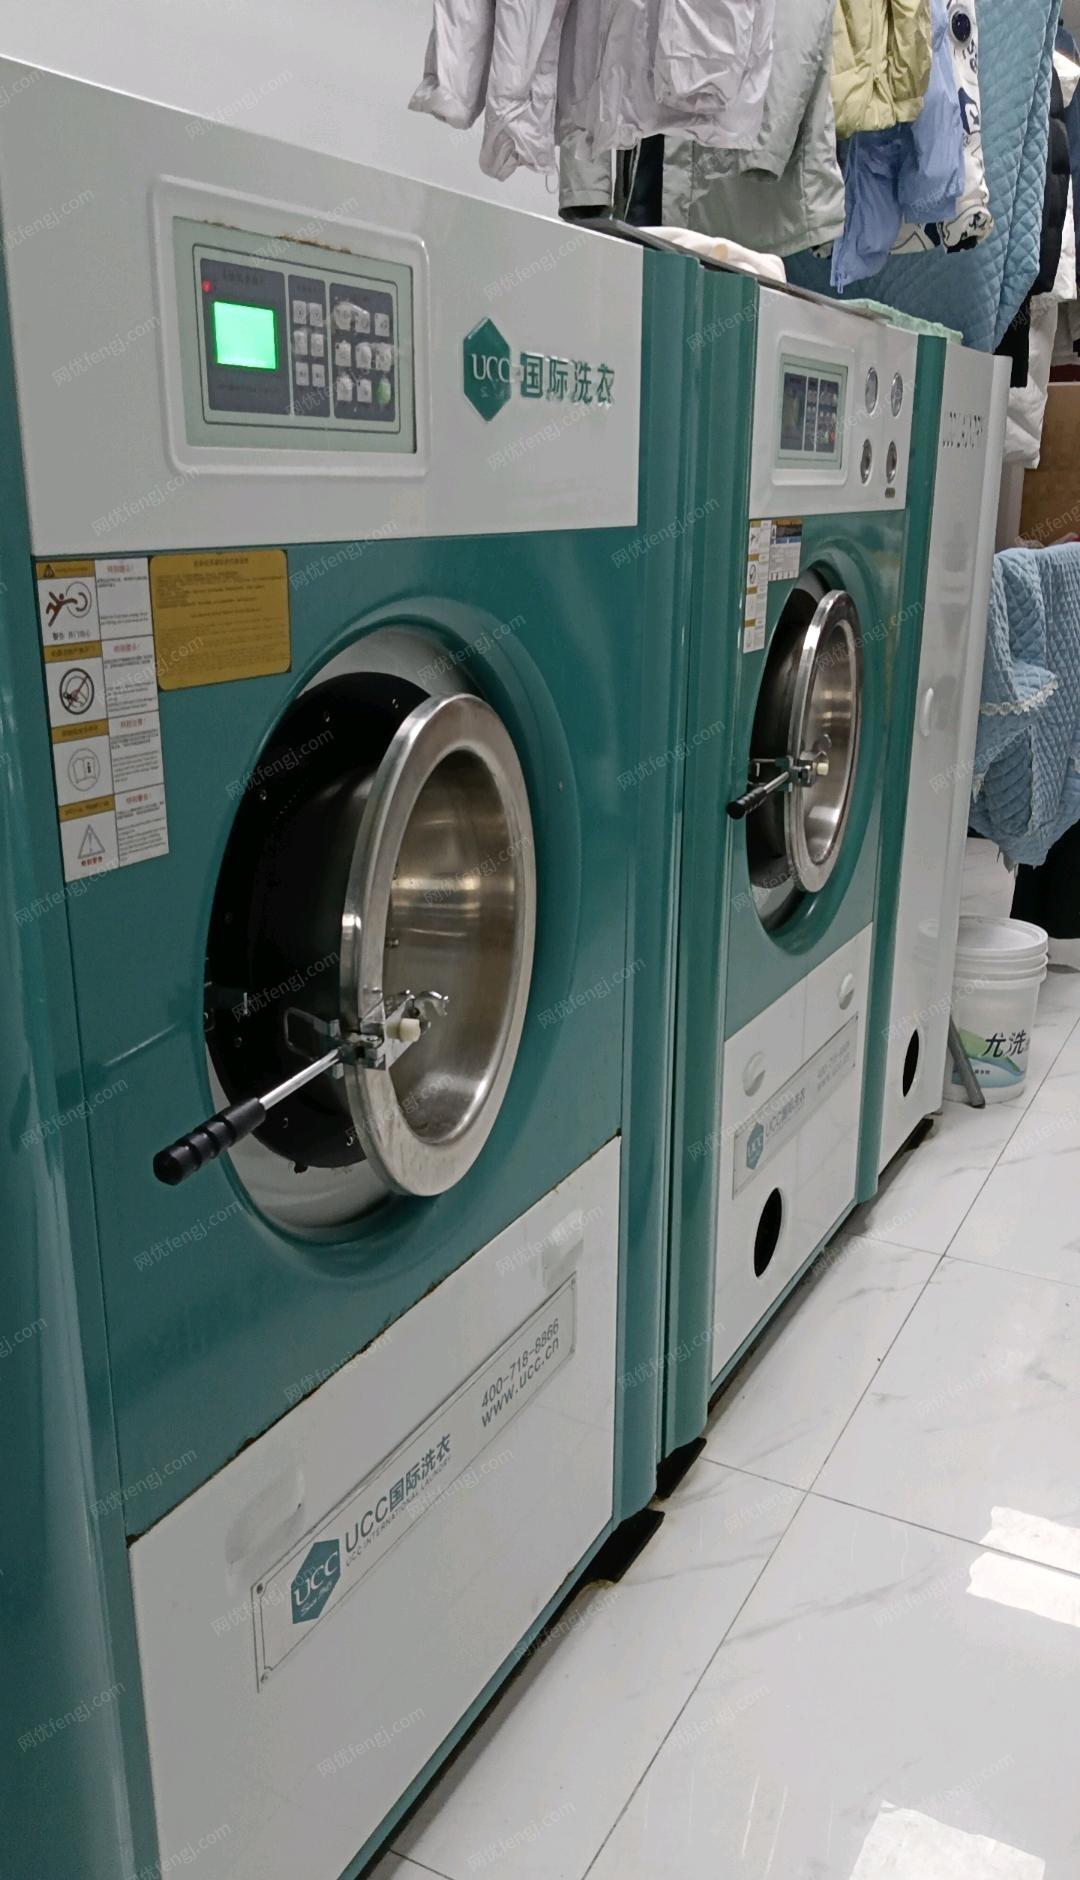 湖南长沙因个人原因经营转向，特急转石油UCC干洗店洗衣全套设备及耗材。